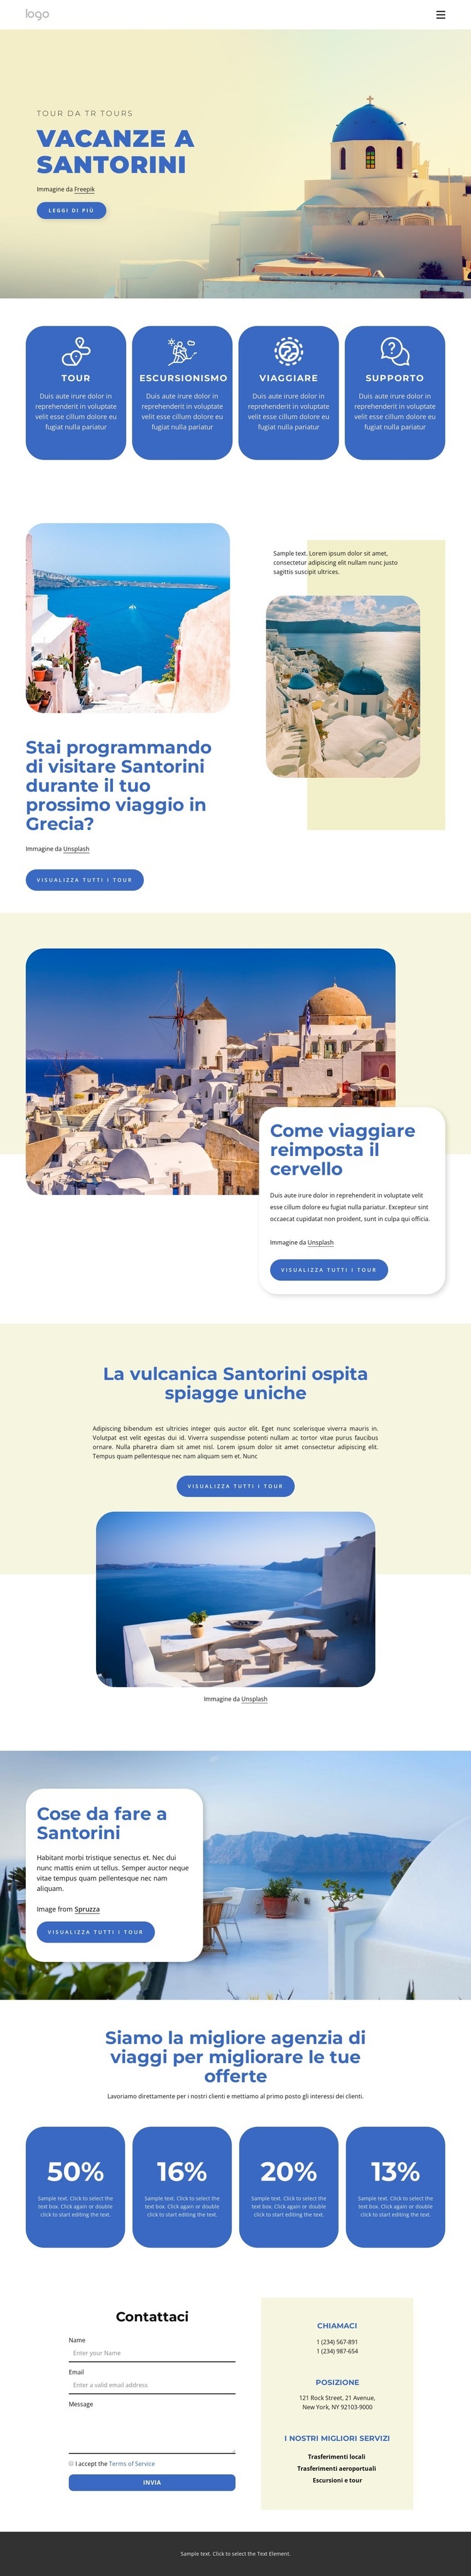 Vacanze a Santorini Mockup del sito web